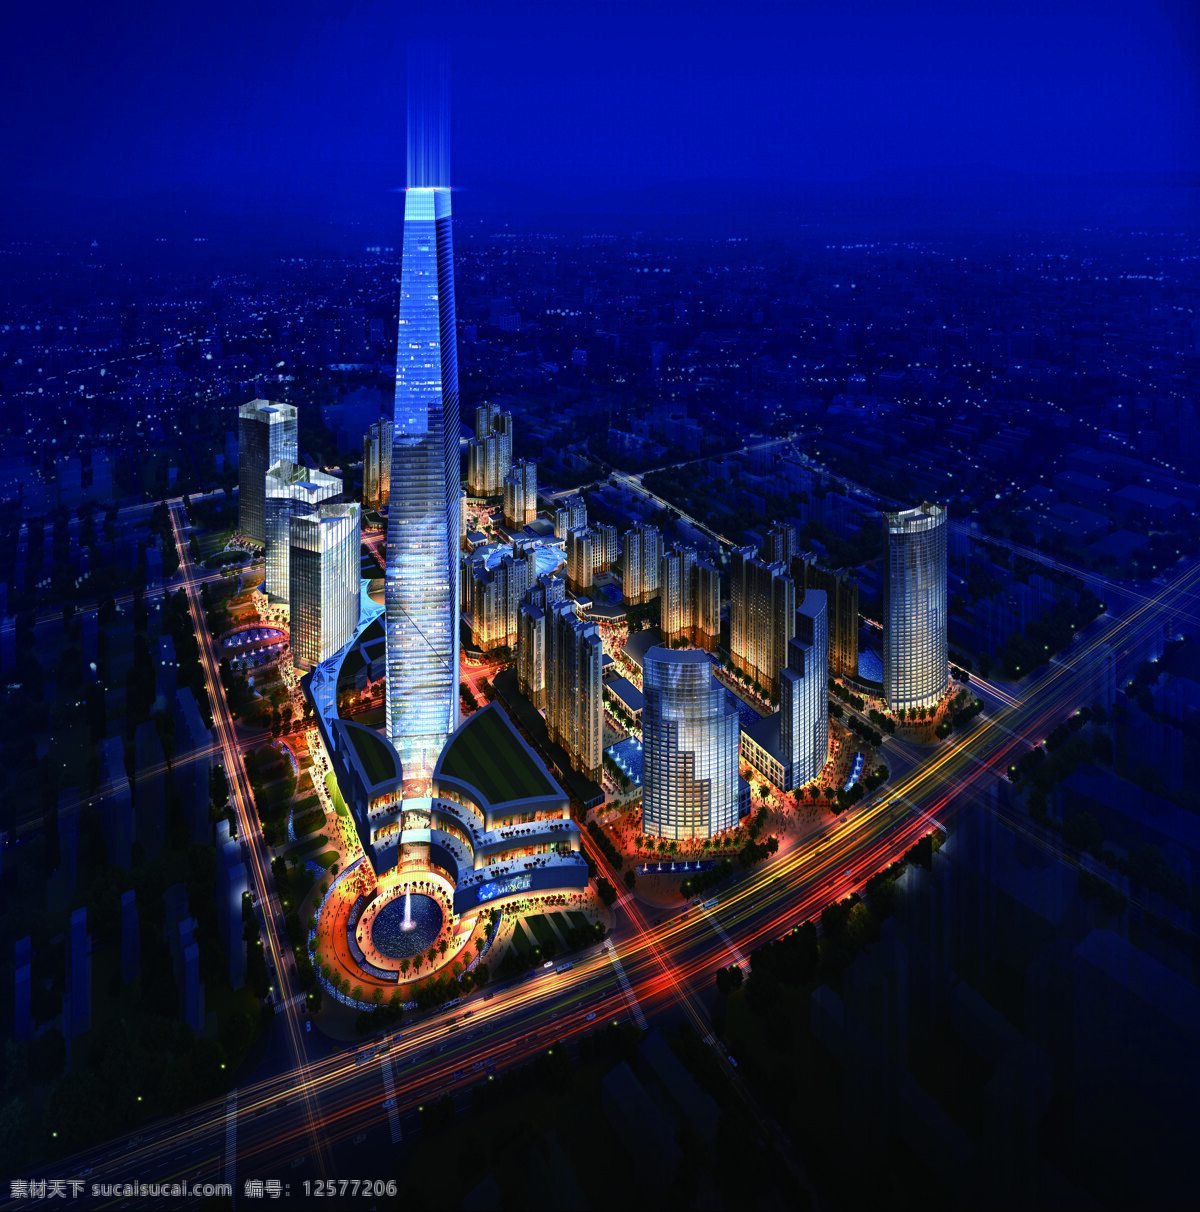 成都 绿地 中心 鸟瞰 夜景 绿地中心 商业综合体 超高层 环境设计 建筑设计